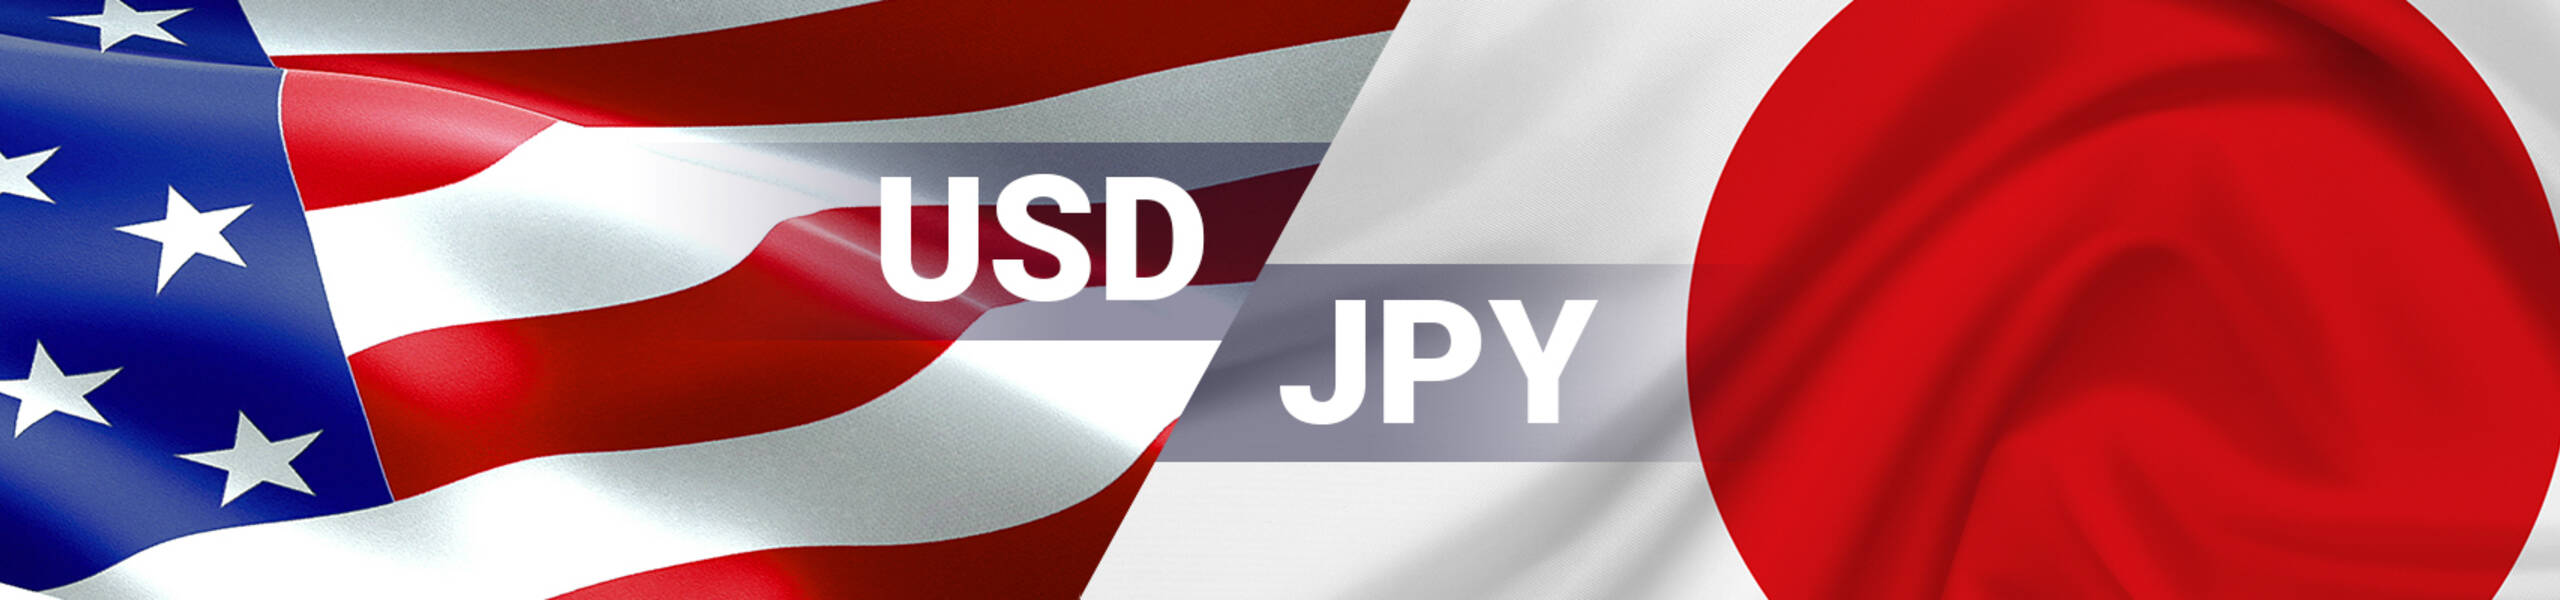 USD/JPY 週間マーケットレポート 2018/03/12 ～2018/03/16